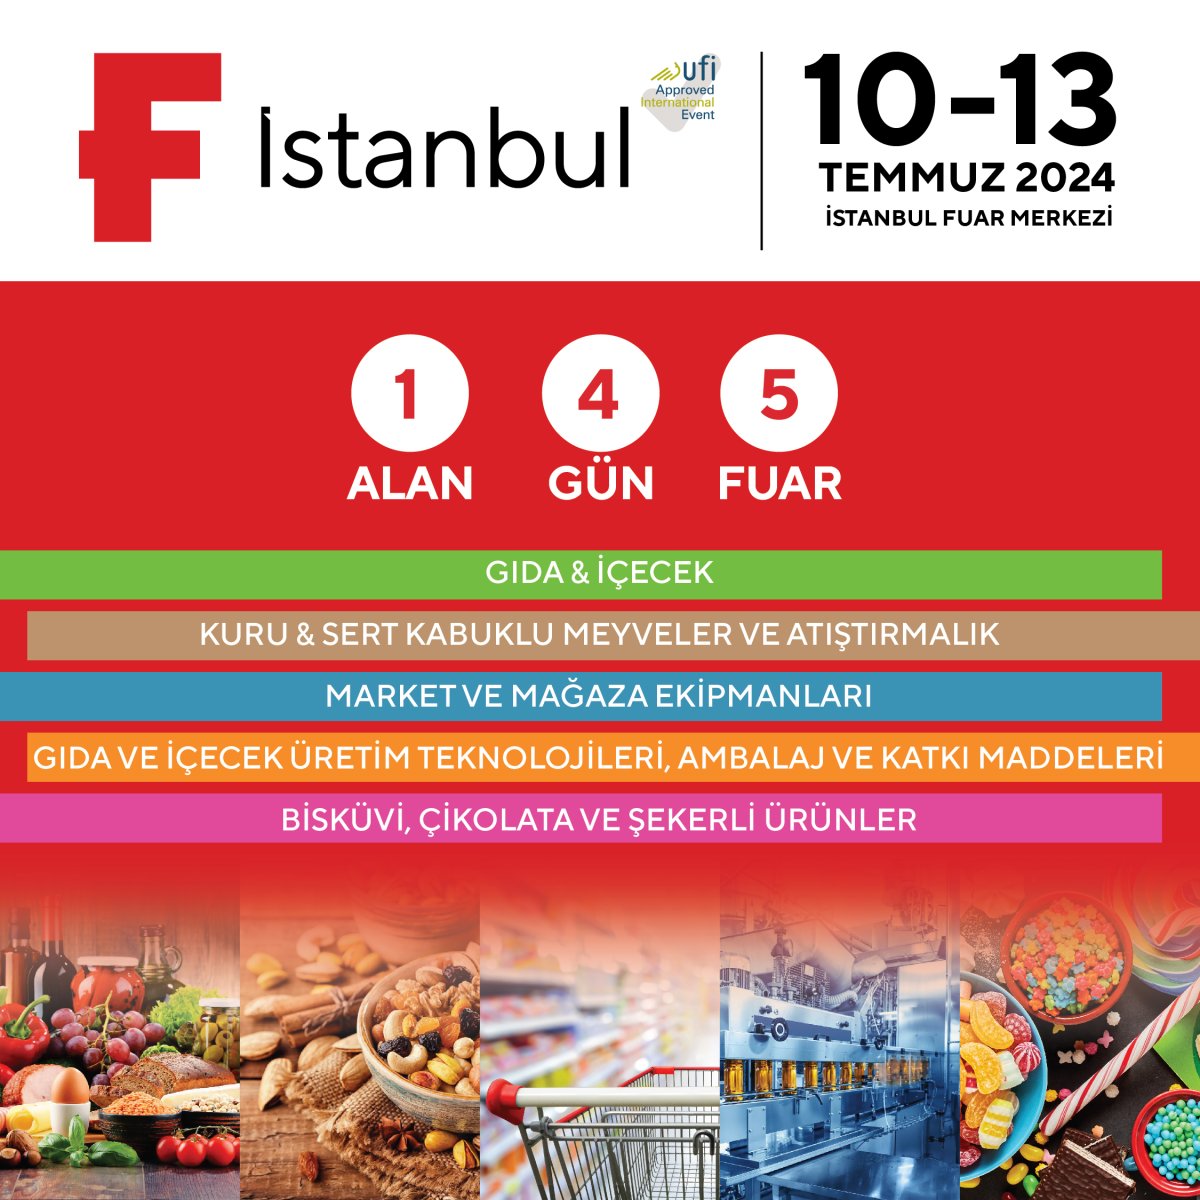 KNC Gıda Makineleri, F Istanbul Gıda ve İçecek Ürünleri ve Üretim Teknolojileri Fuarı'na Katılıyor